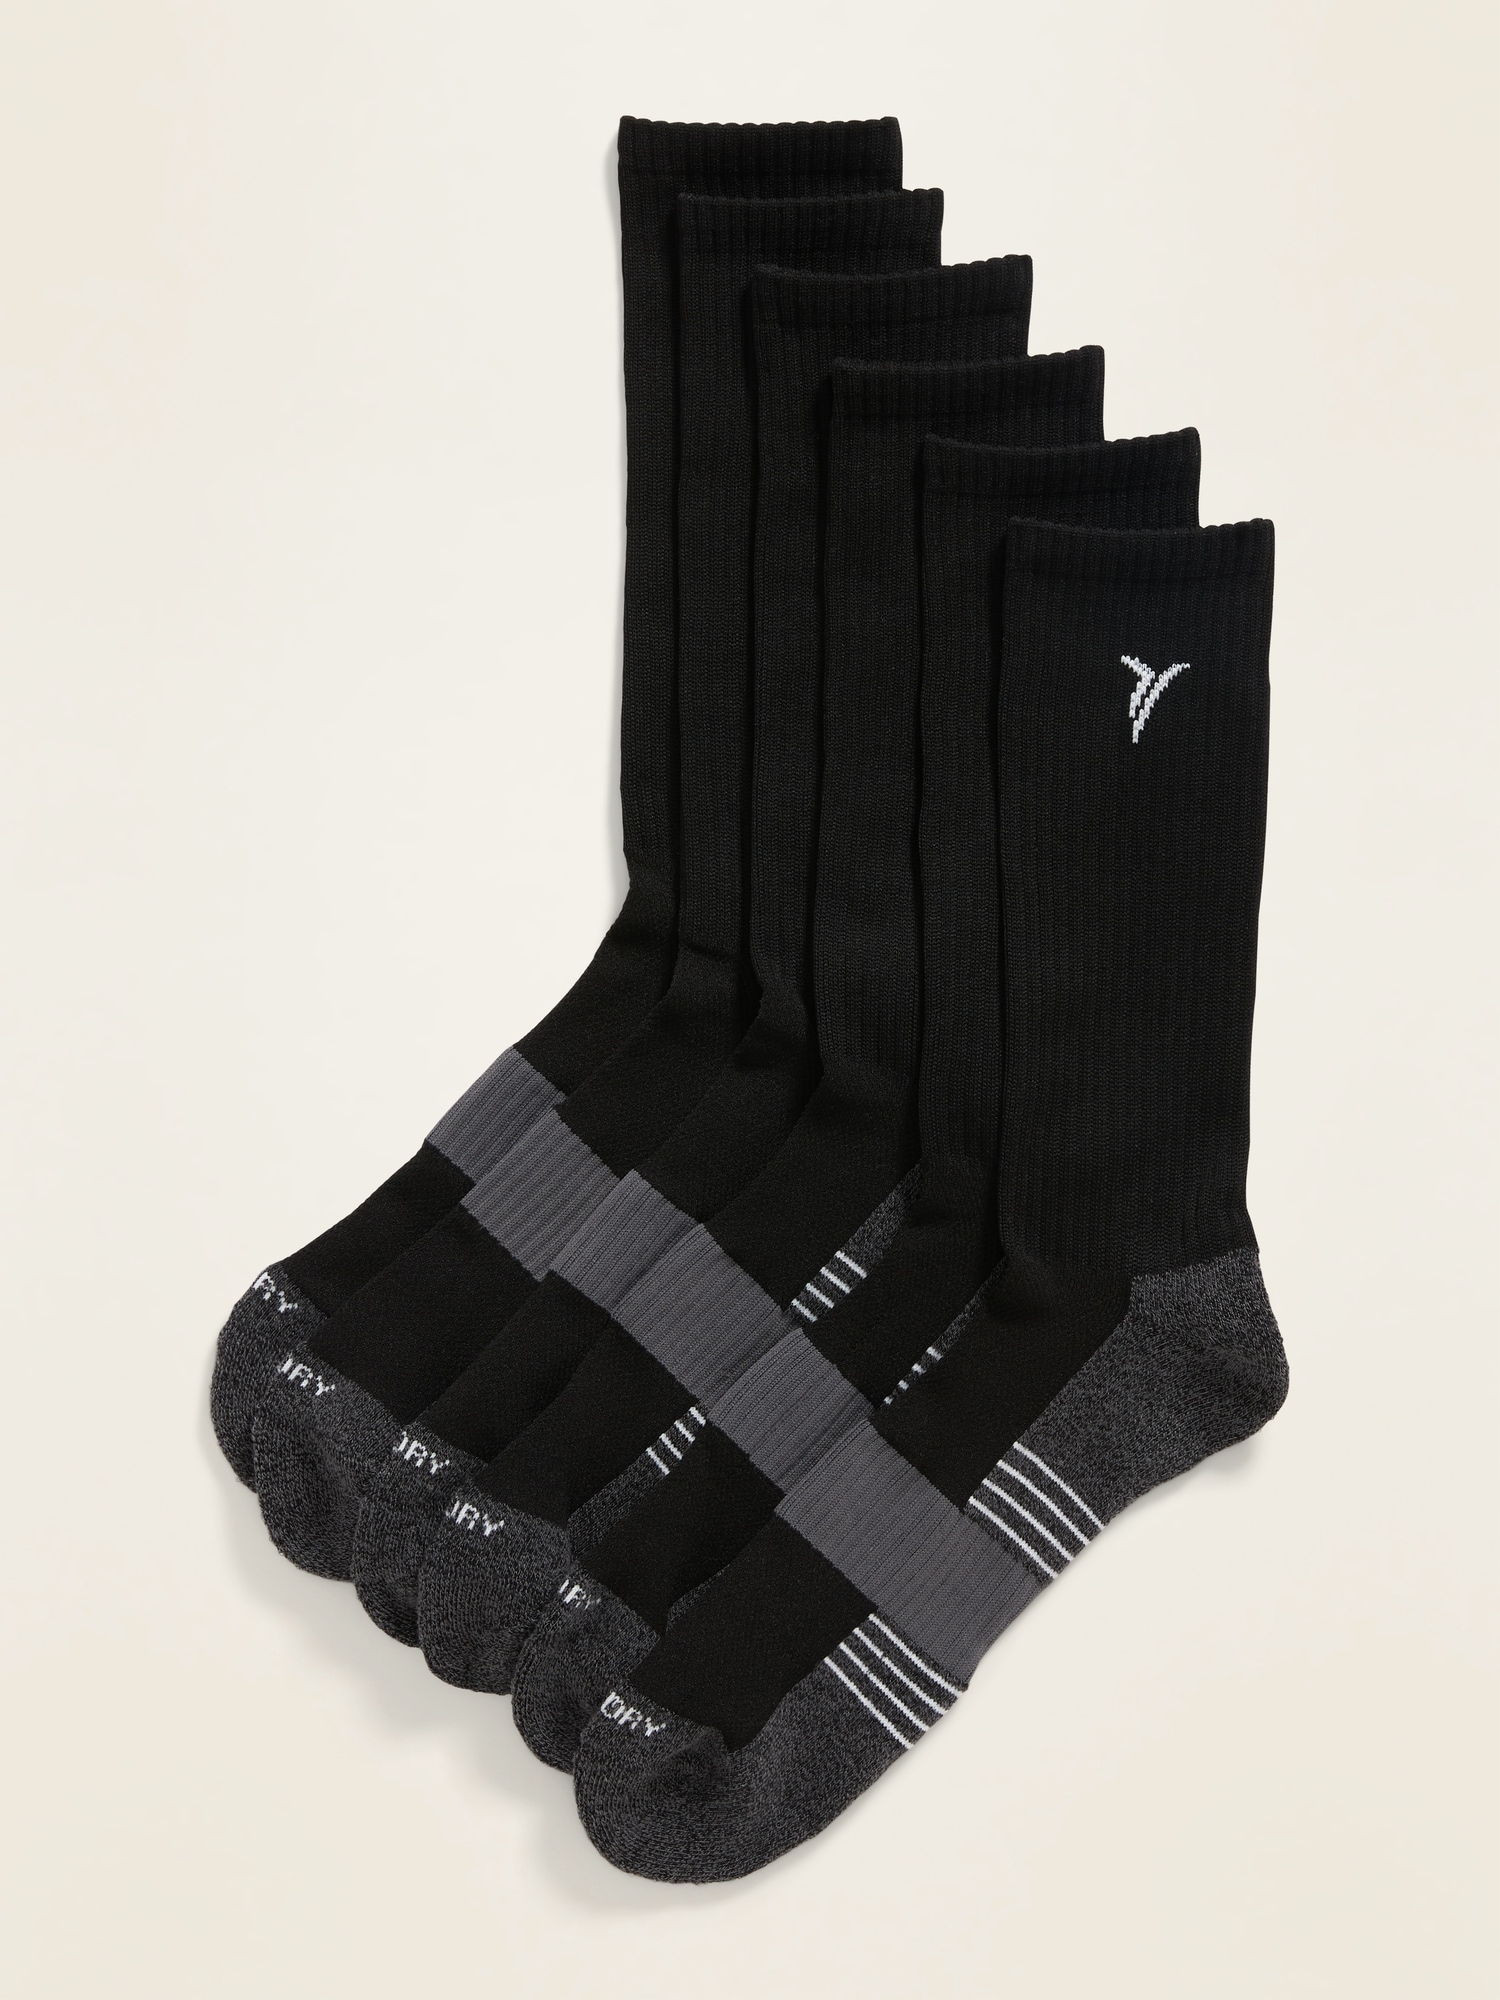 Old Navy Go-Dry Training Socks 3-Pack for Men black. 1